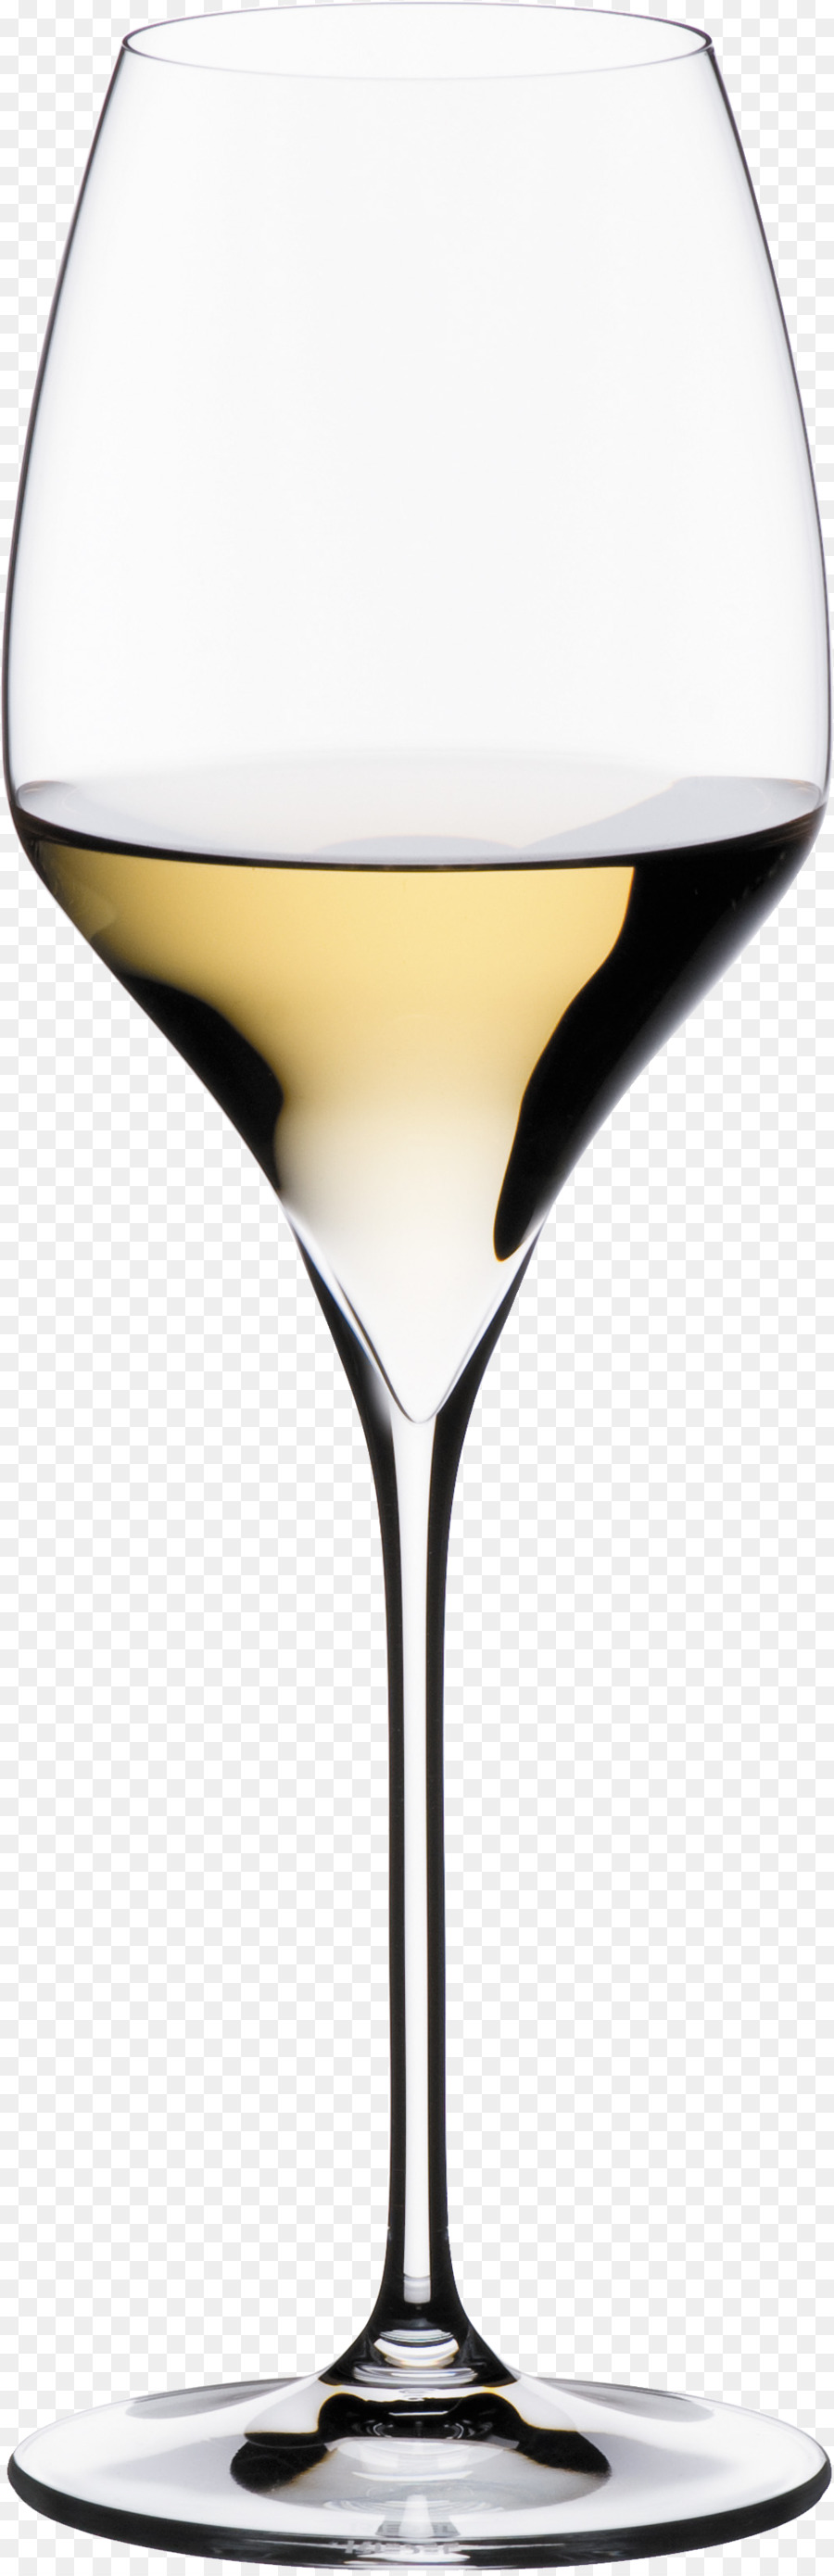 Riesling rượu vang Trắng Sauvignon blanc Chardonnay - Rượu